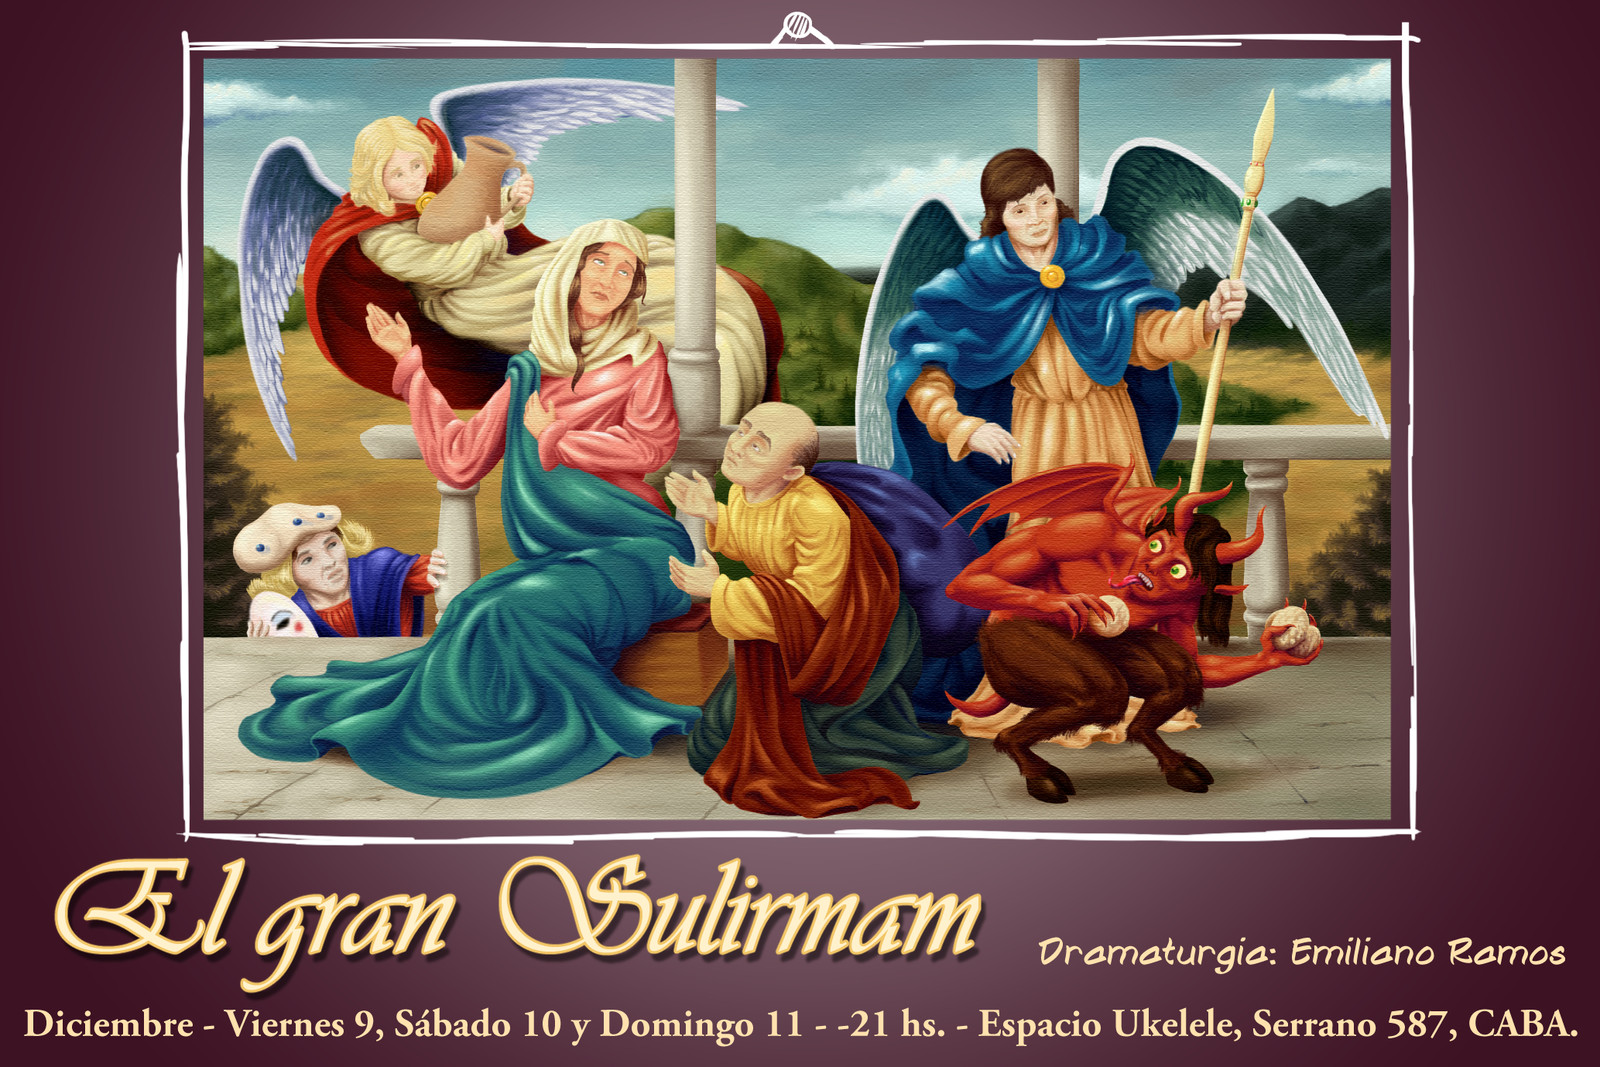 El gran Sulirmam - Final image